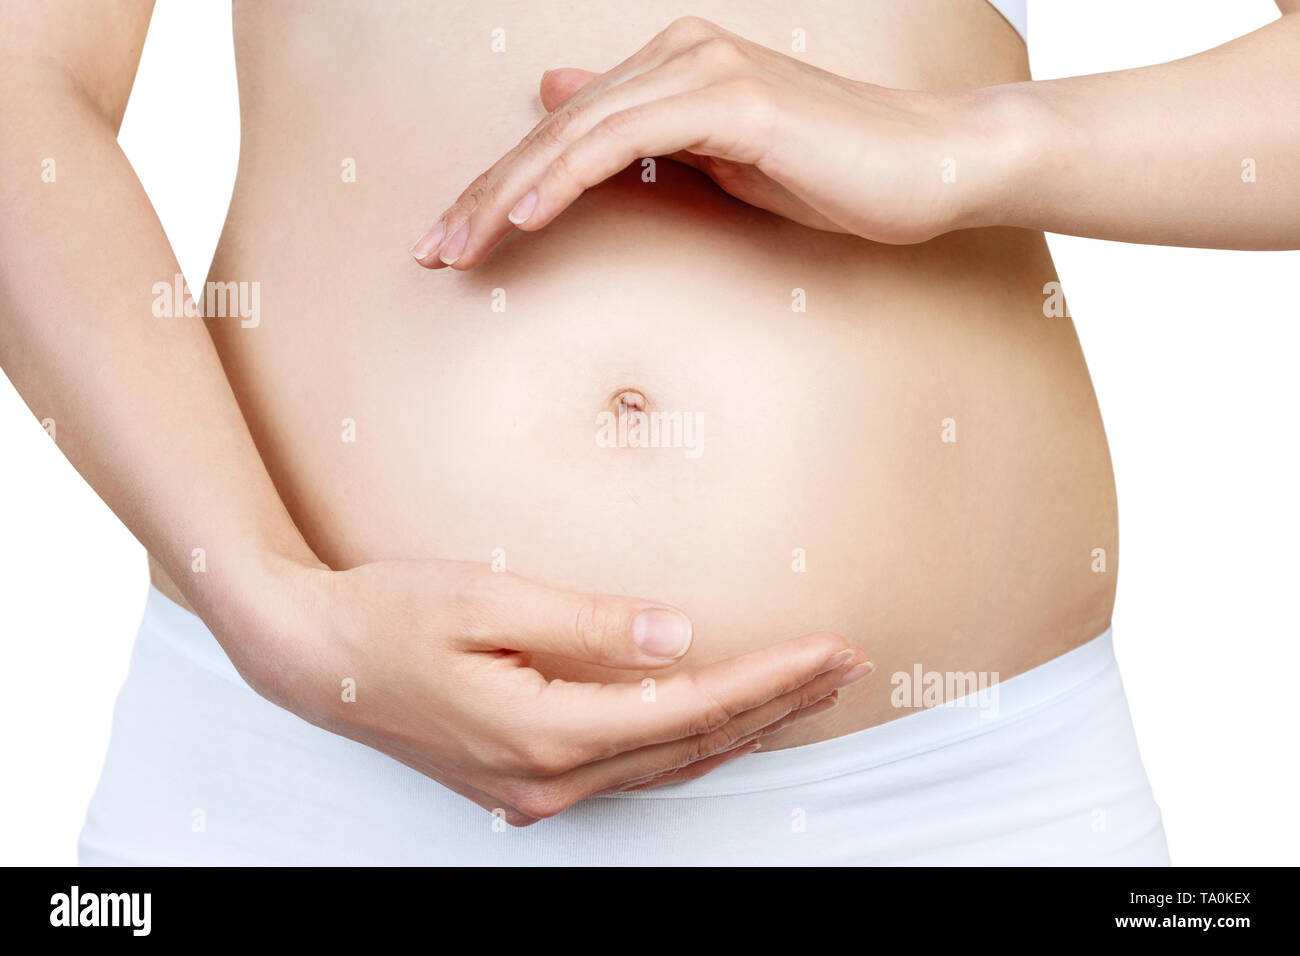 Schwangere Frau mit Bauch in den frühen Stadien der Schwangerschaft. Stockfoto